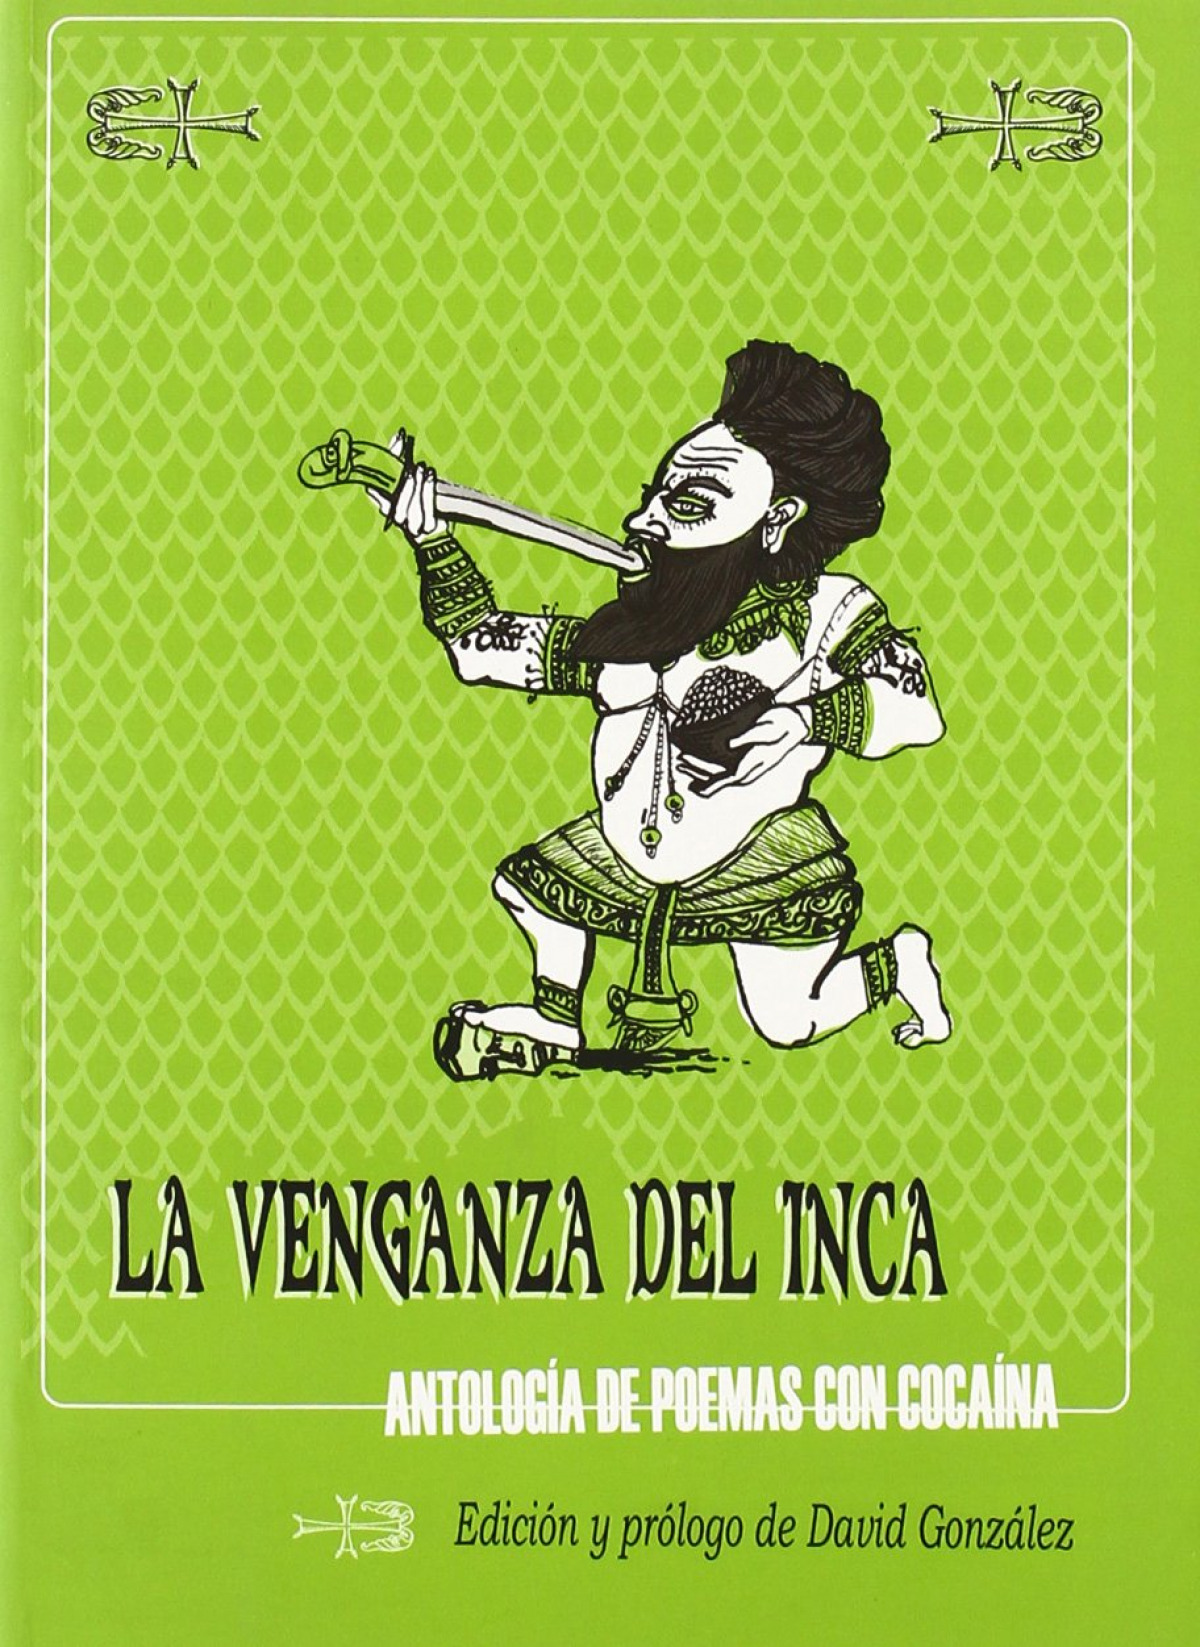 Venganza del inca,la antología de poemas con cocaína - Gonzalez David